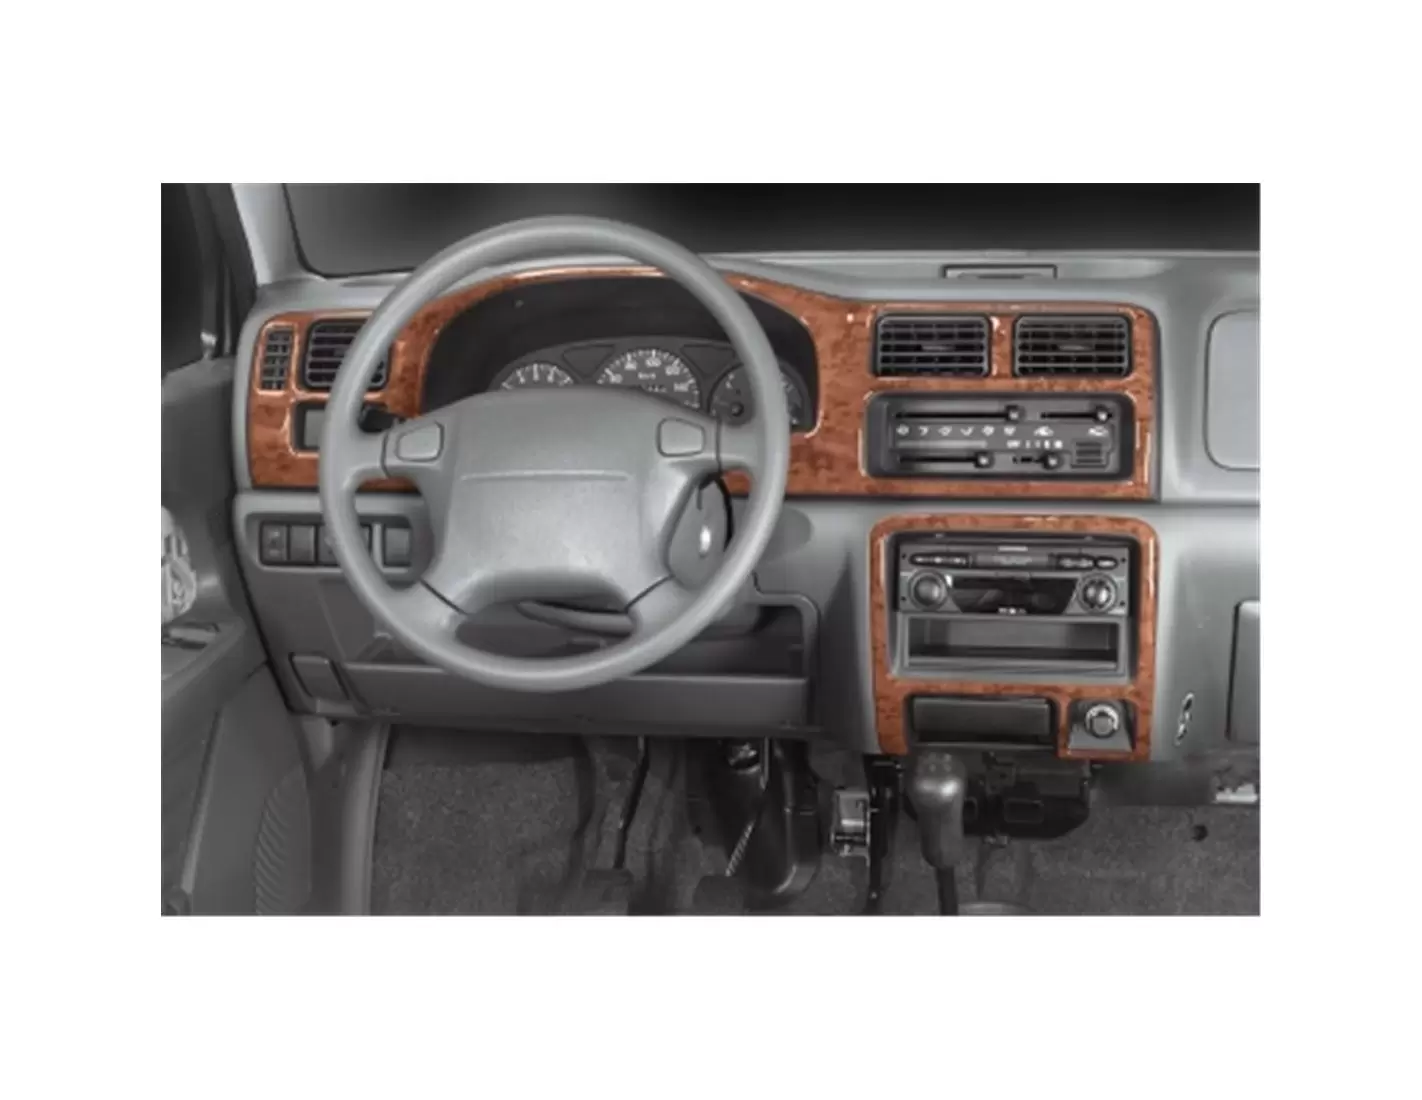 Suzuki Wagon R 10.97-09.00 3M 3D Interior Dashboard Trim Kit Dash Trim Dekor 4-Parts